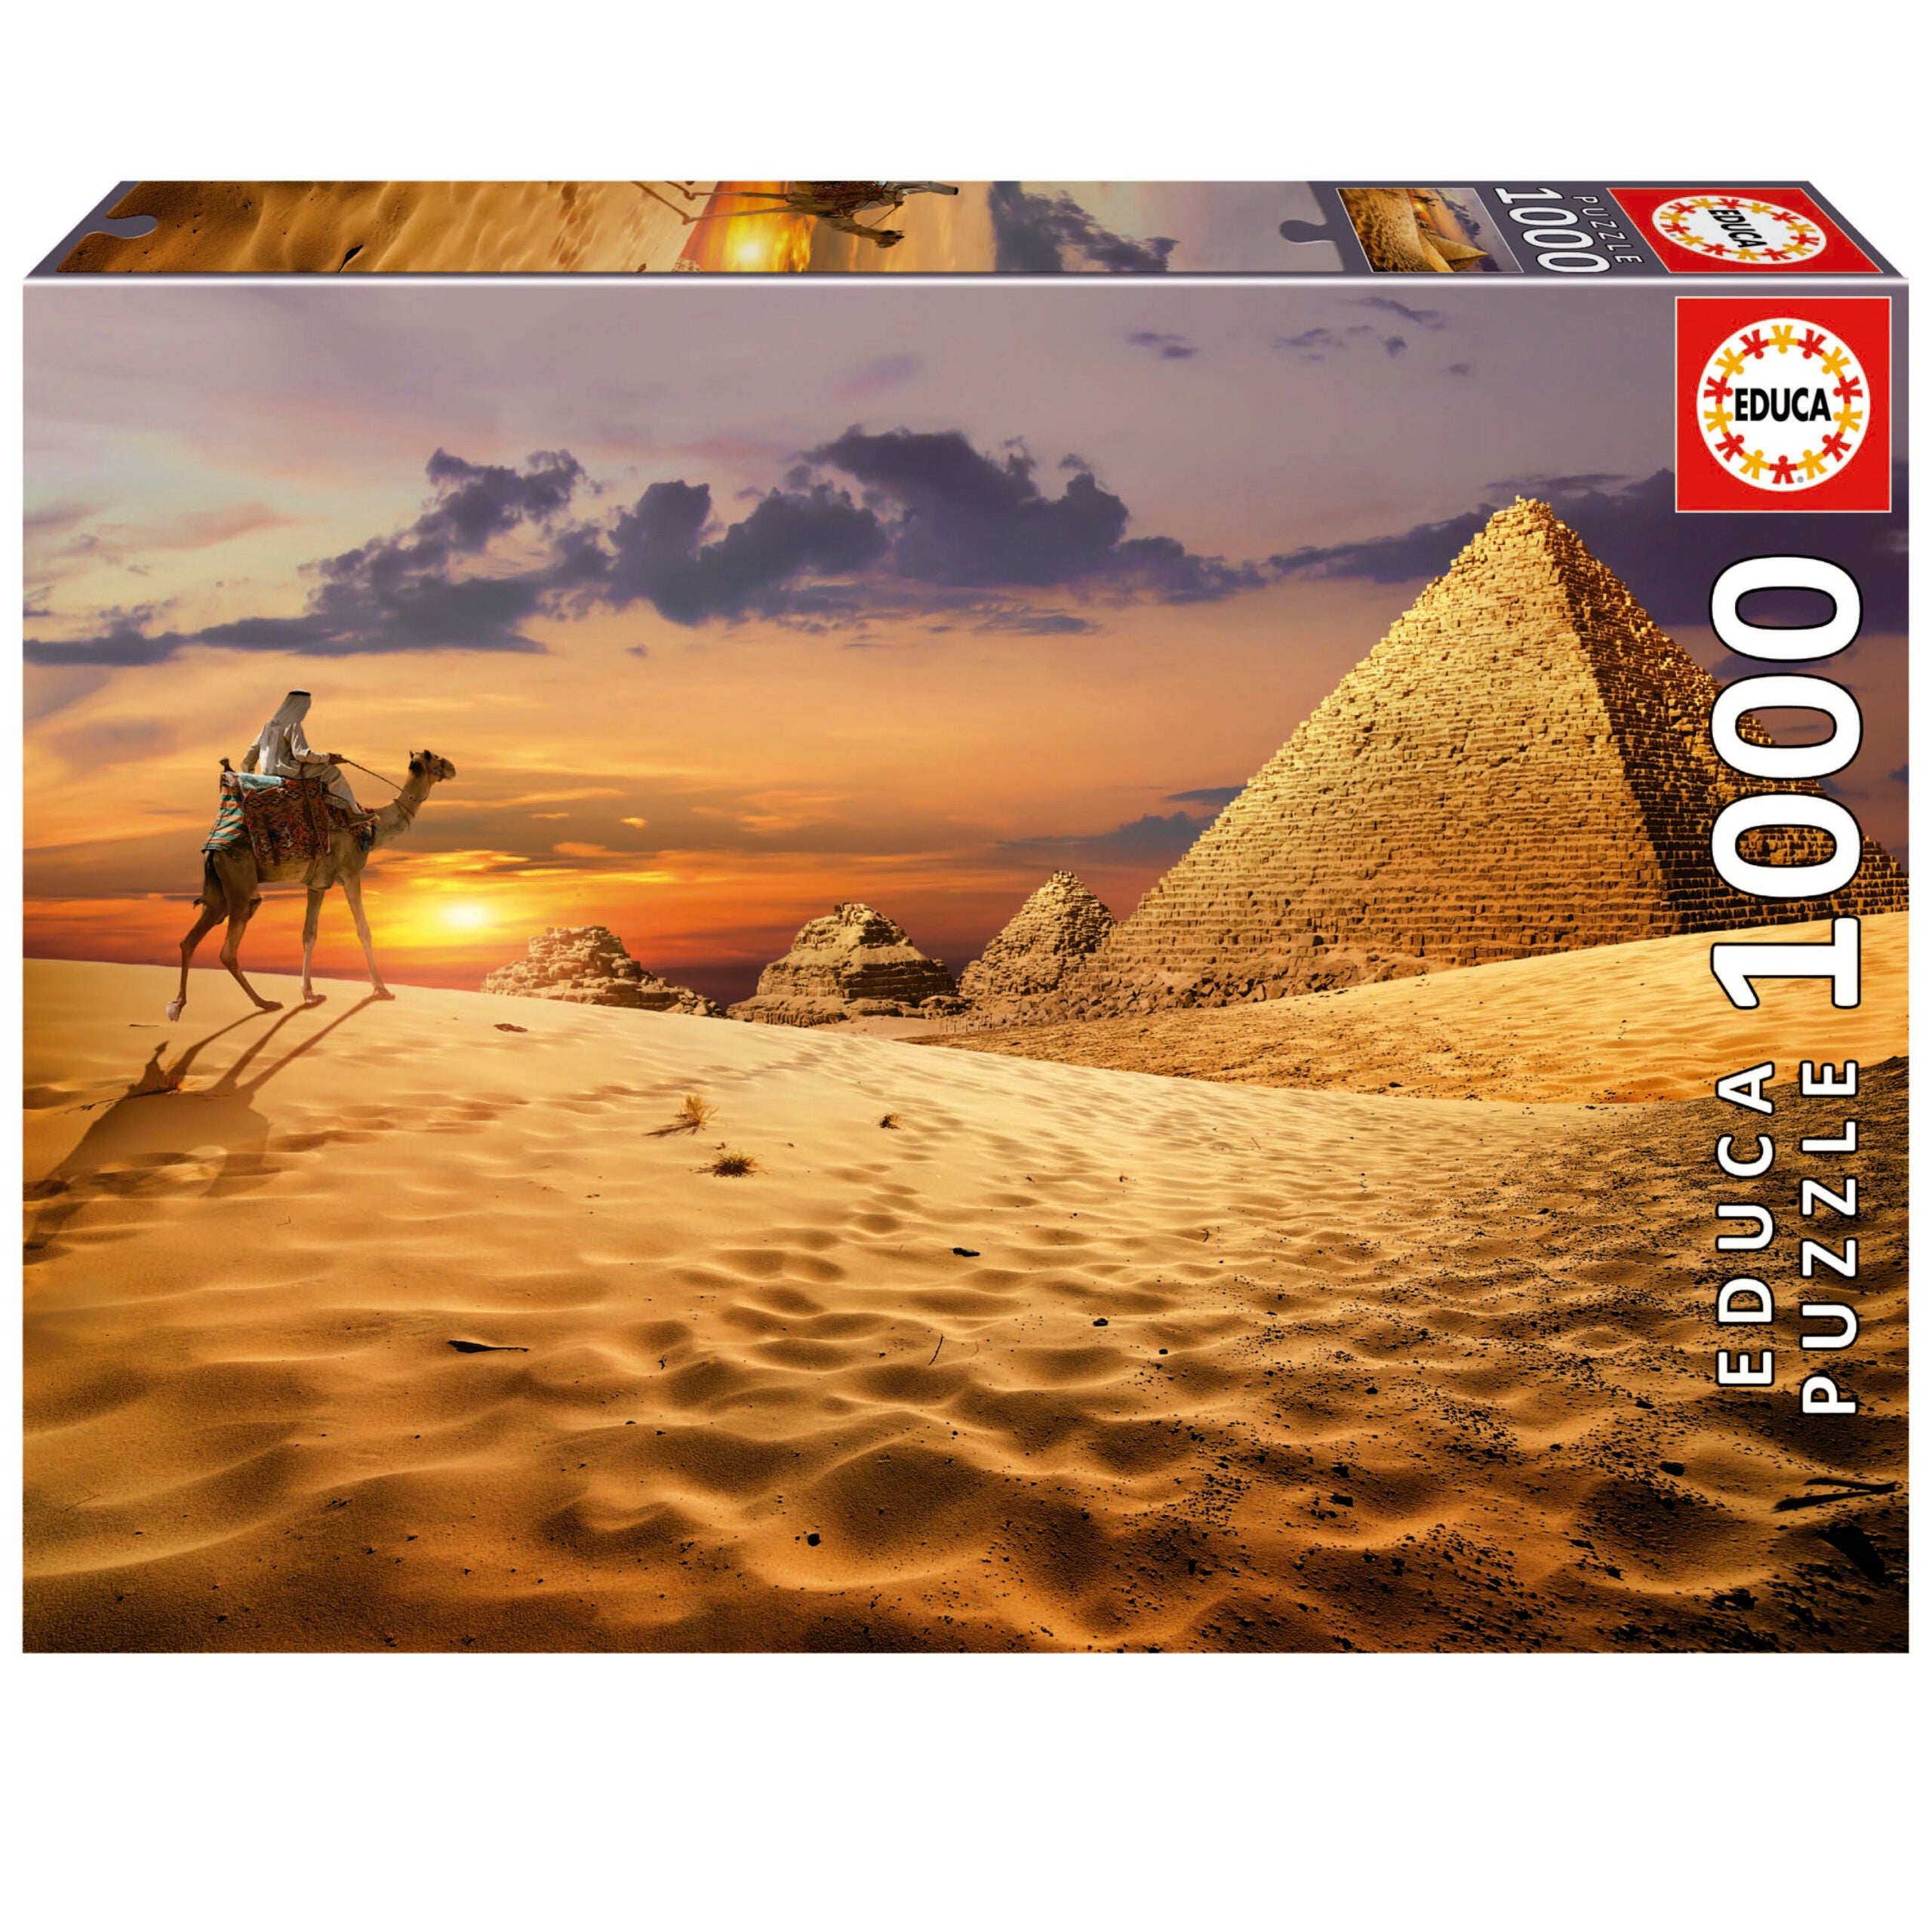 CAMEL IN THE DESERT 1000PC